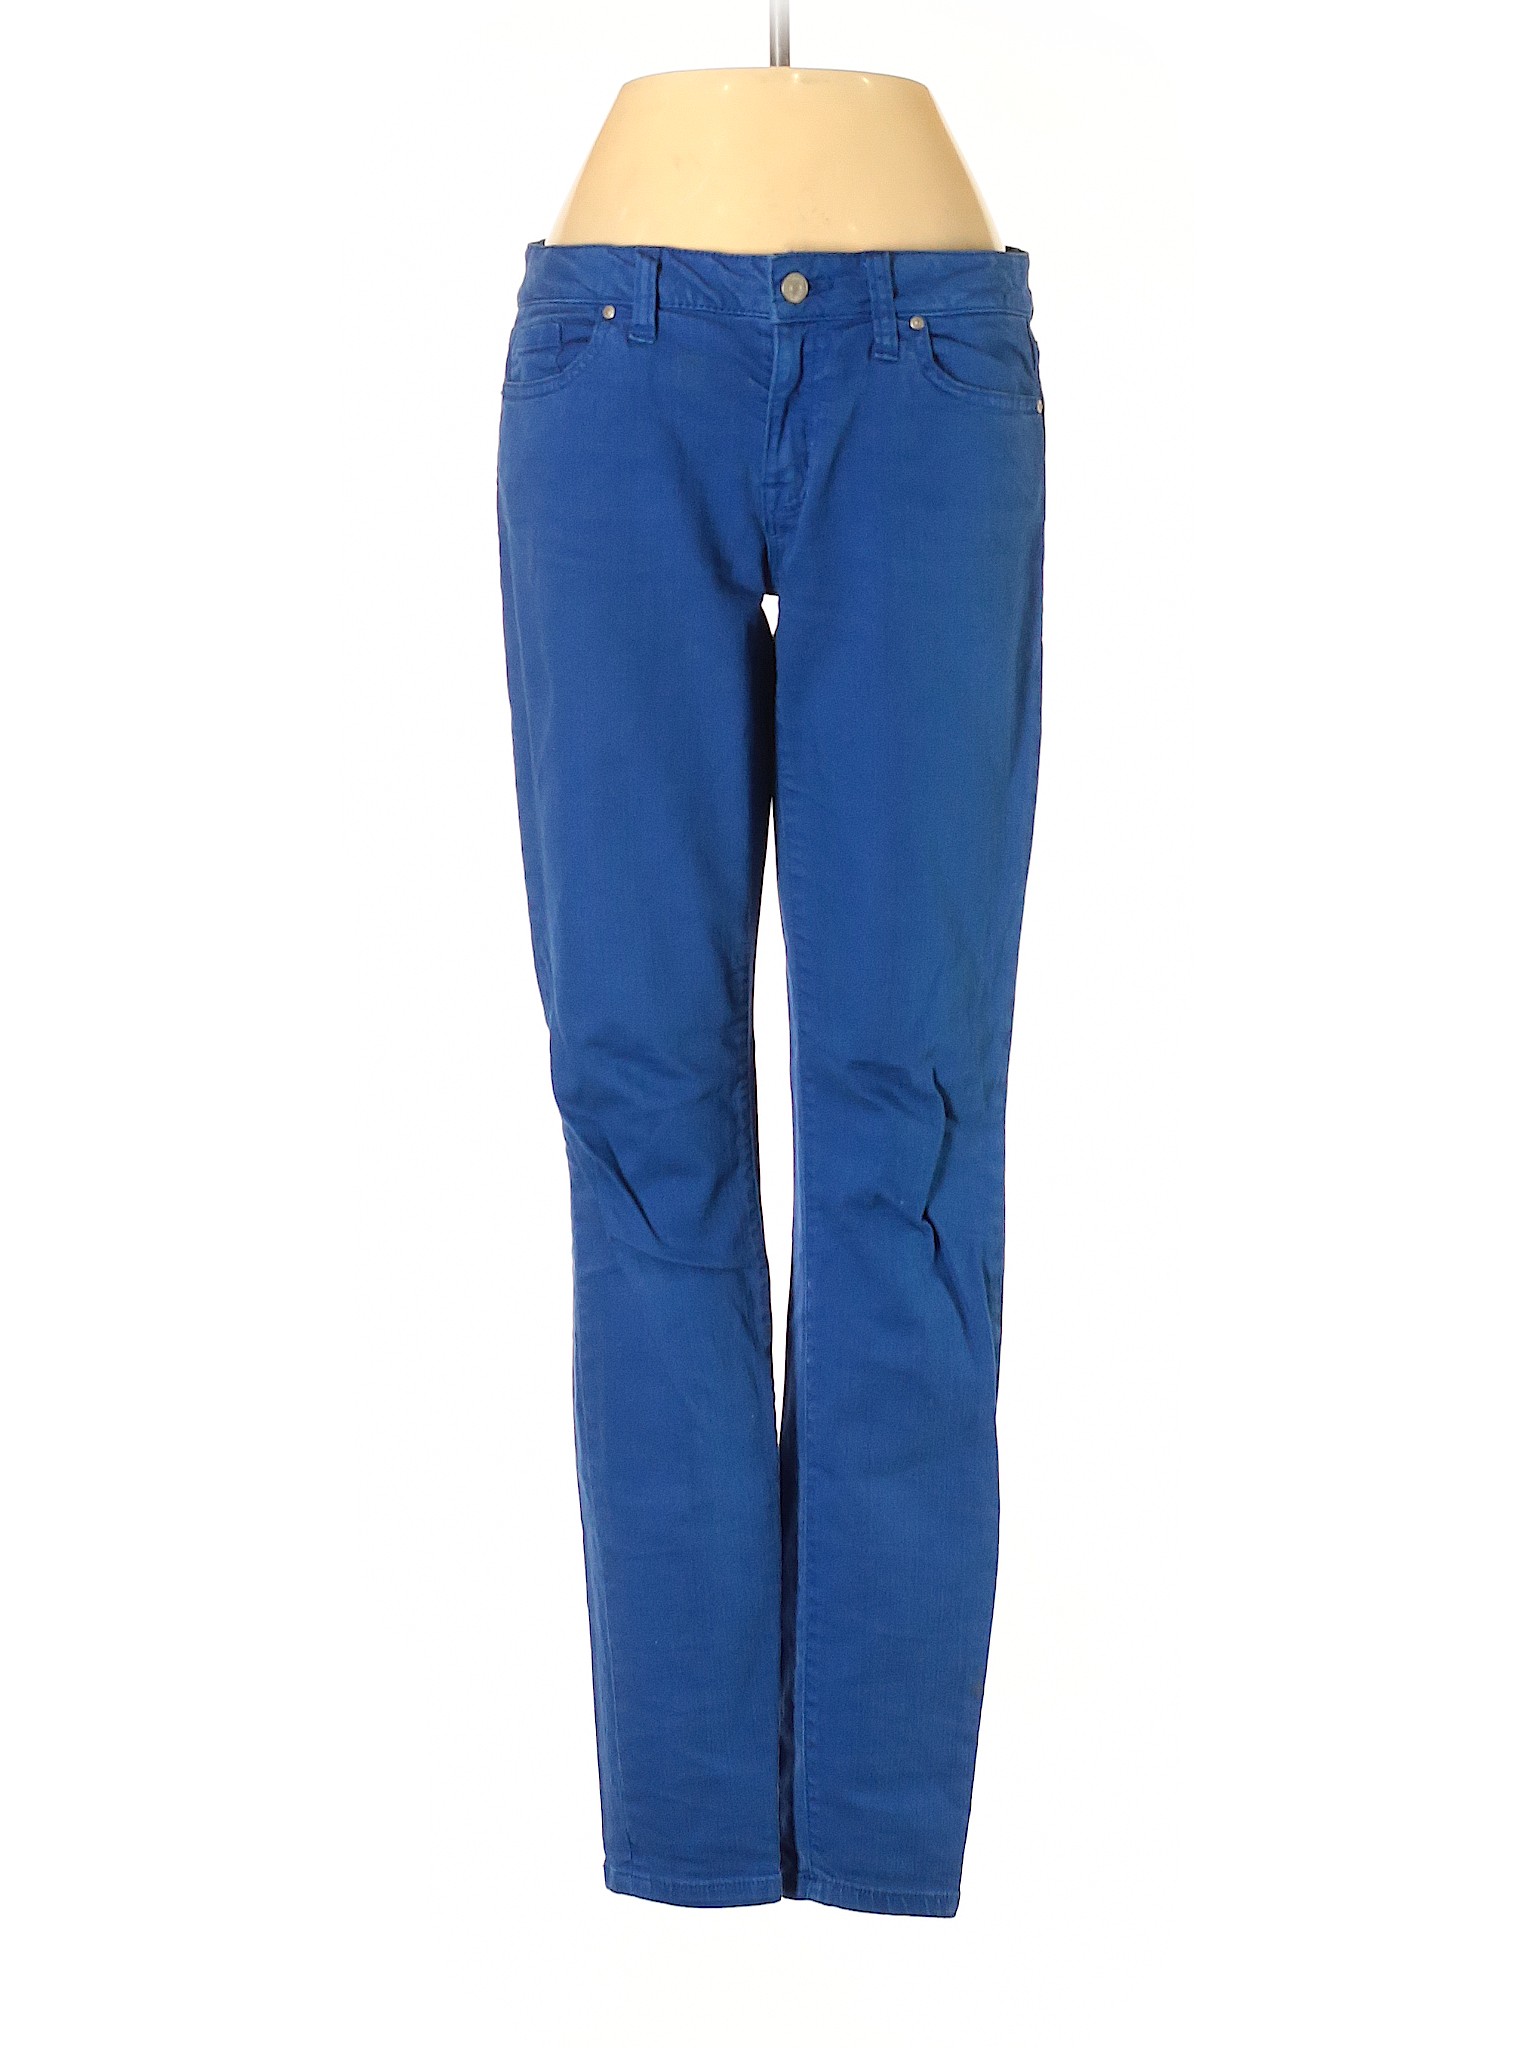 Tommy Hilfiger Women Blue Jeans 2 | eBay